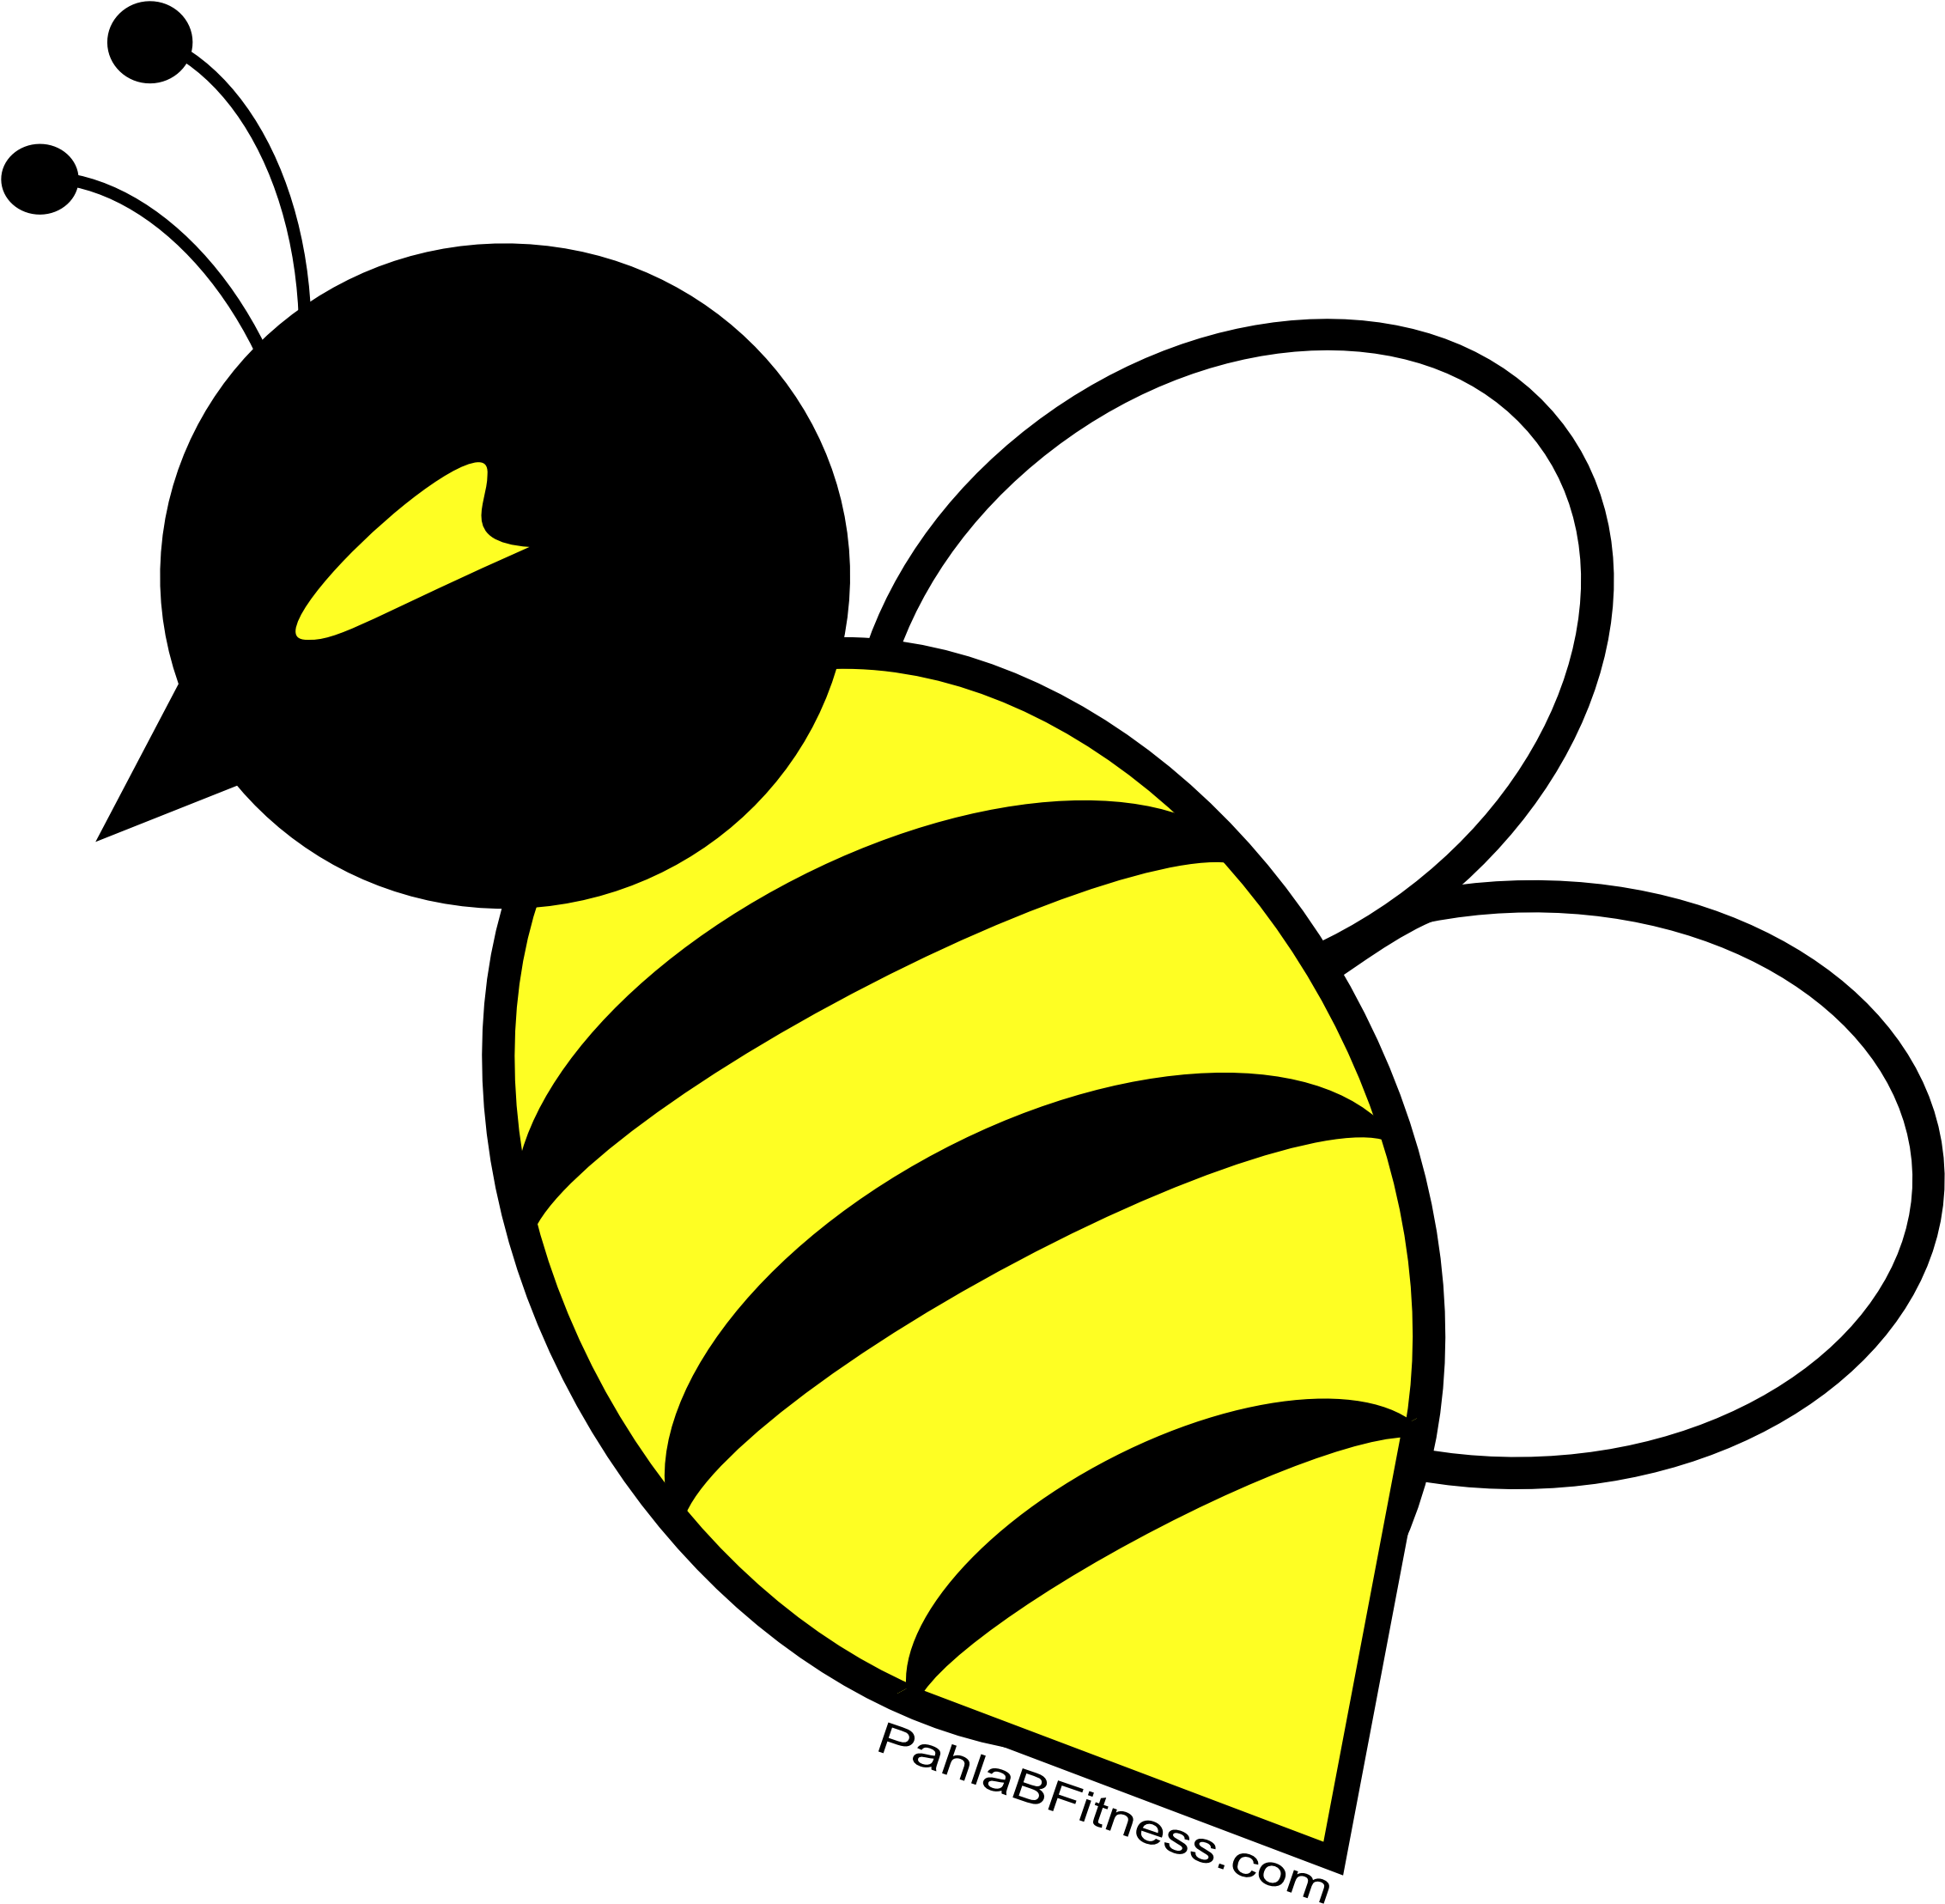 Honeybee (2273x2502)